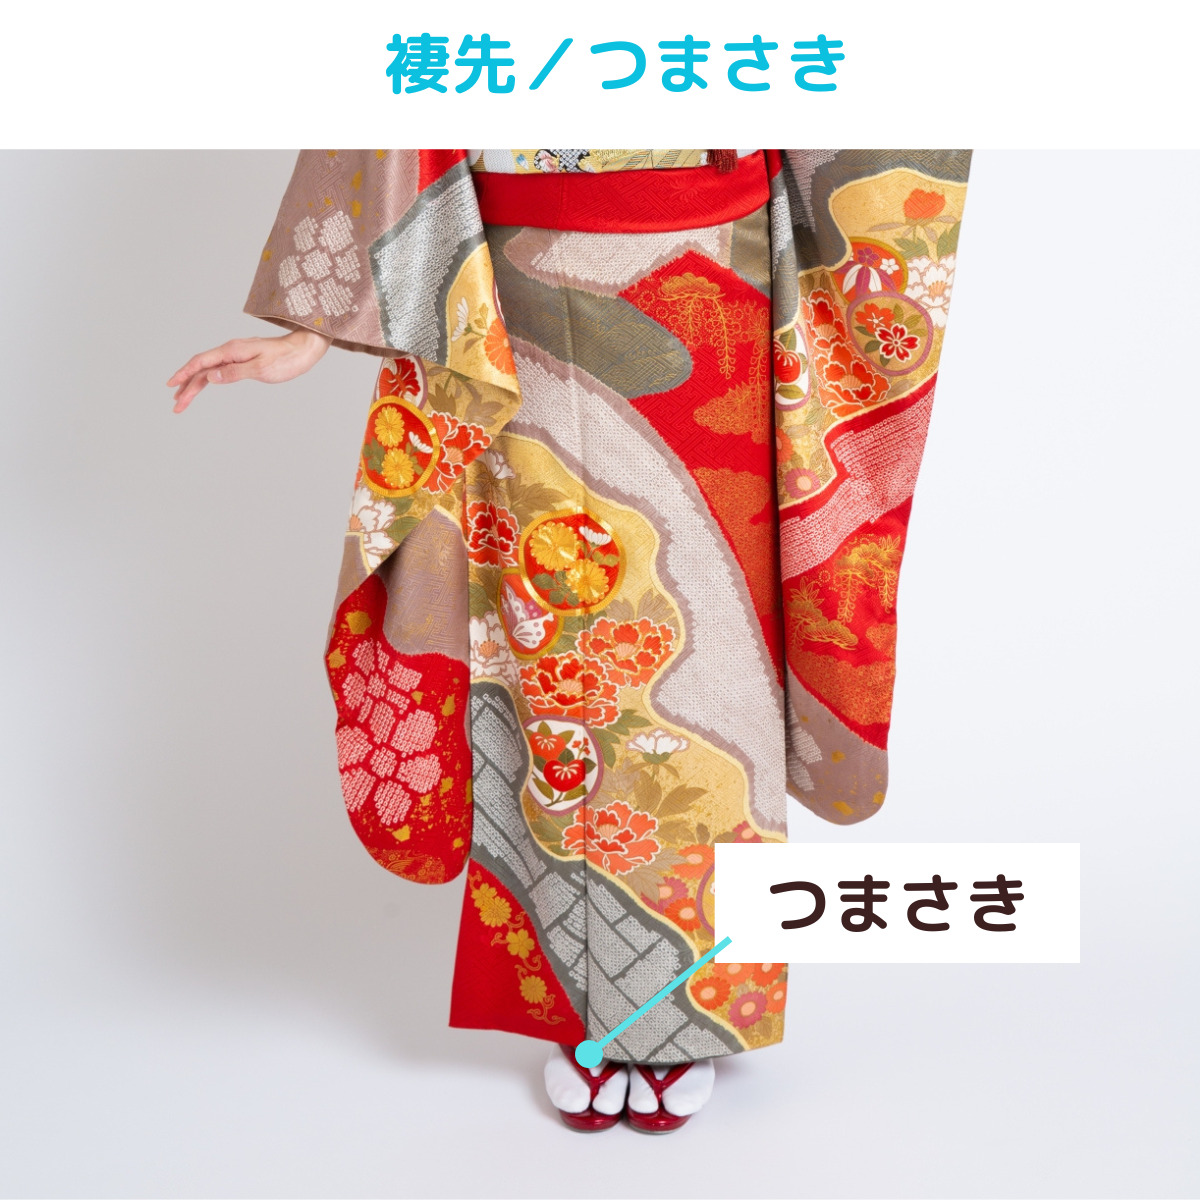 着物kimonoの名称、褄先（つまさき）の説明画像、写真。